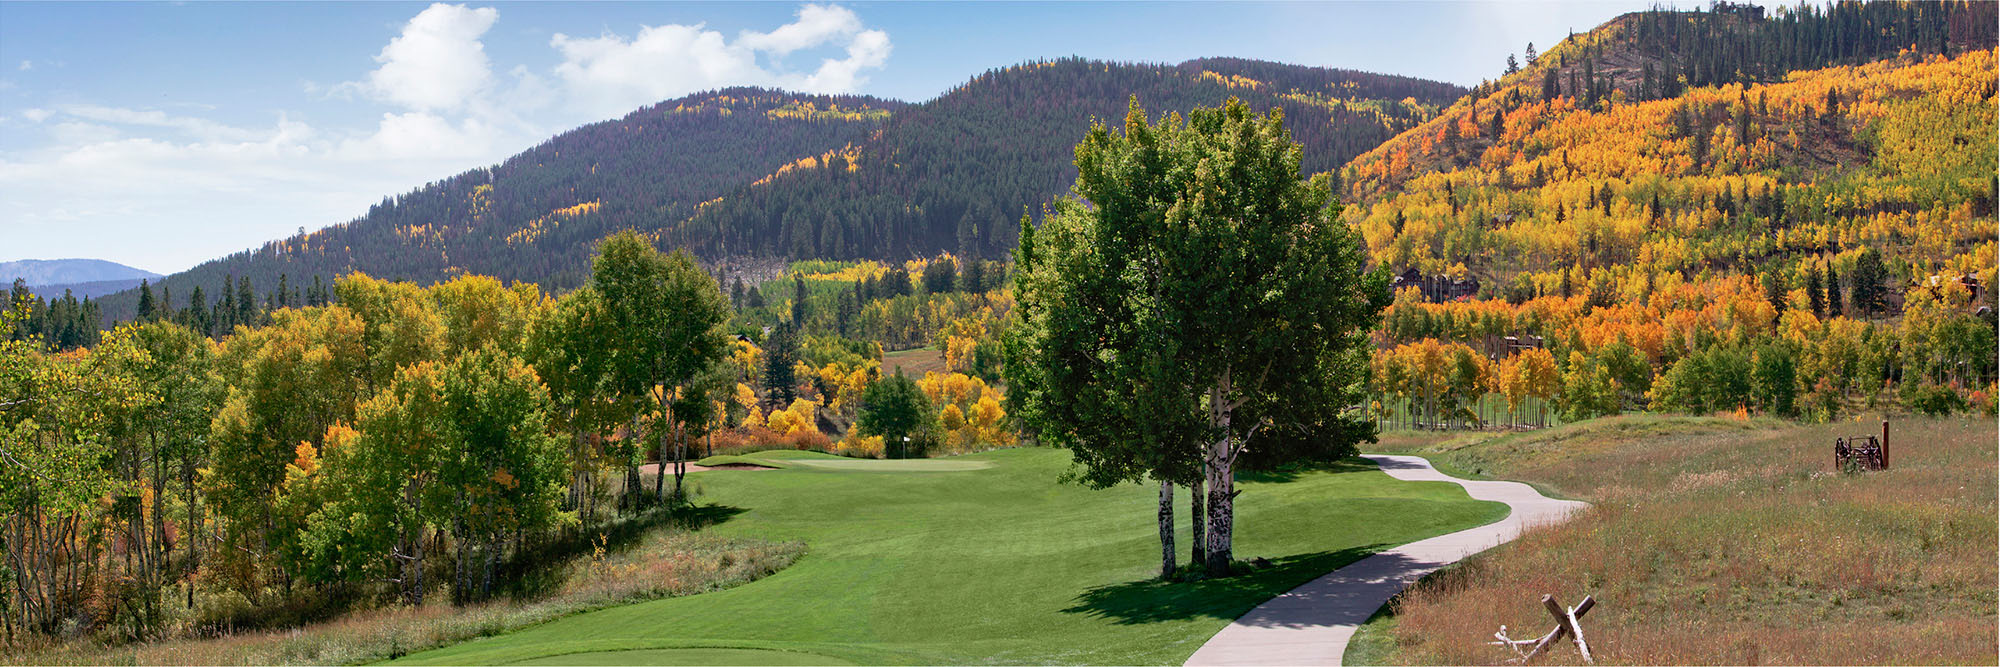 Golf Course Image - Cordillera Mountain Course No. 15